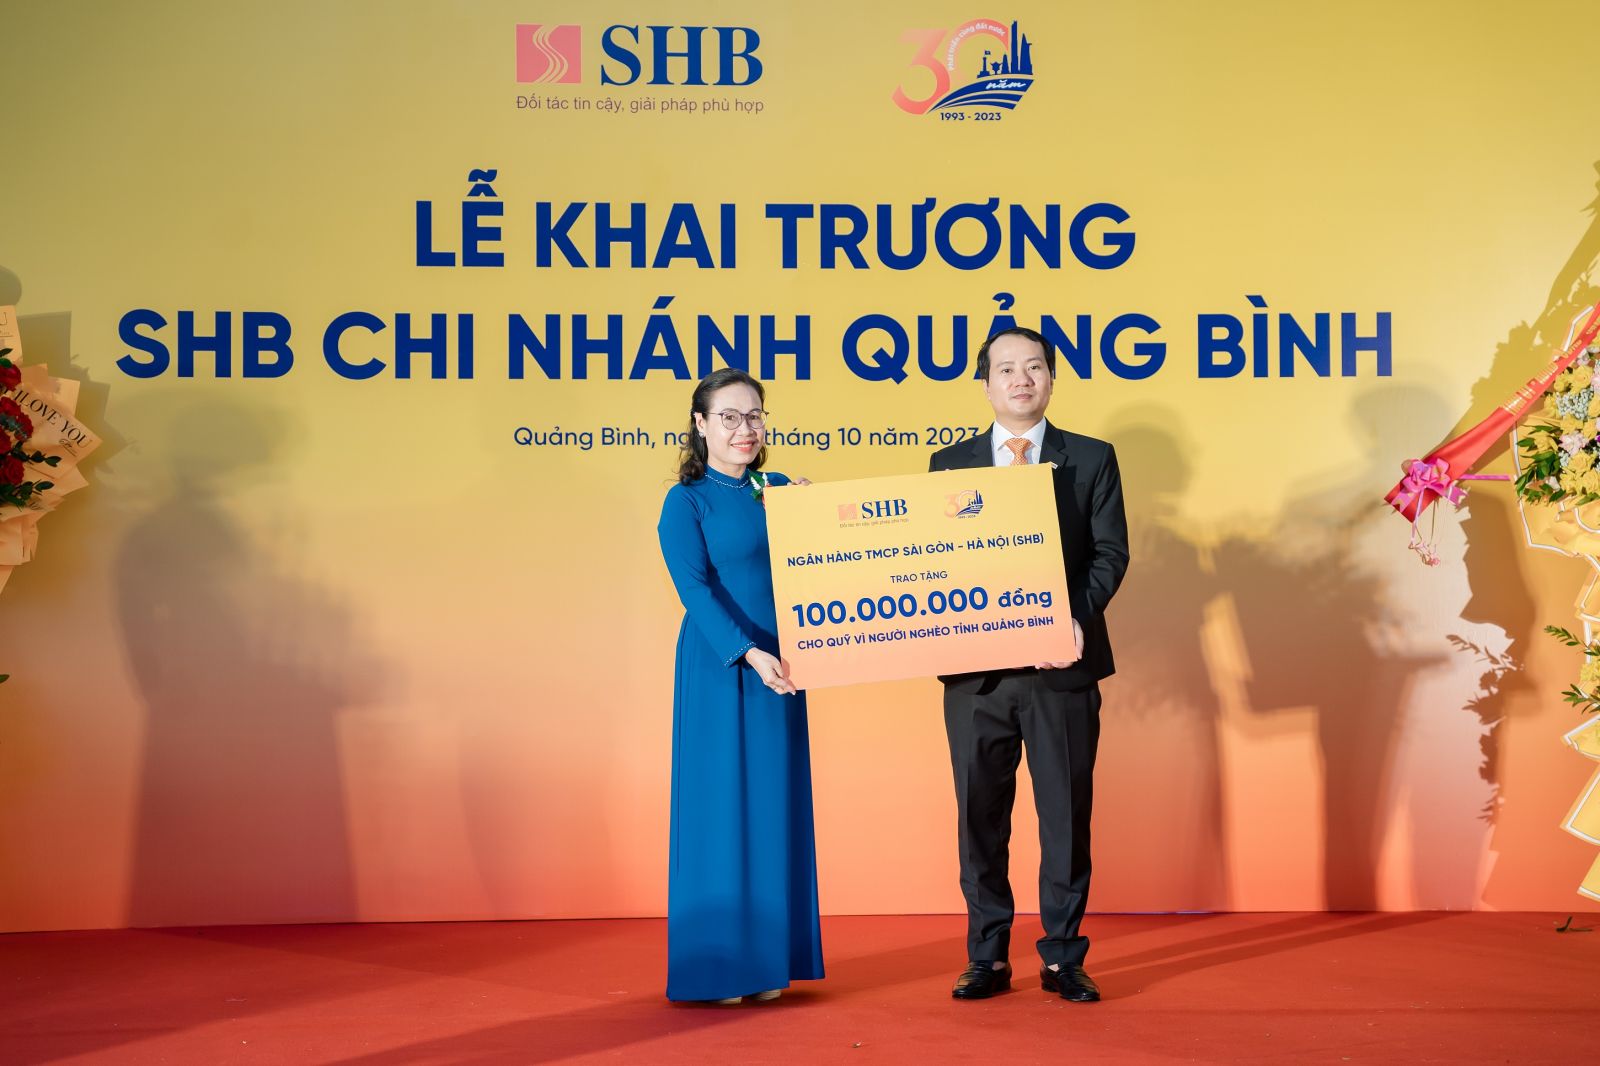 Ông Trần Nam Hải – Giám đốc SHB Quảng Bình đại diện ngân hàng trao tặng Quỹ Vì người nghèo tỉnh Bến Tre 100 triệu đồng